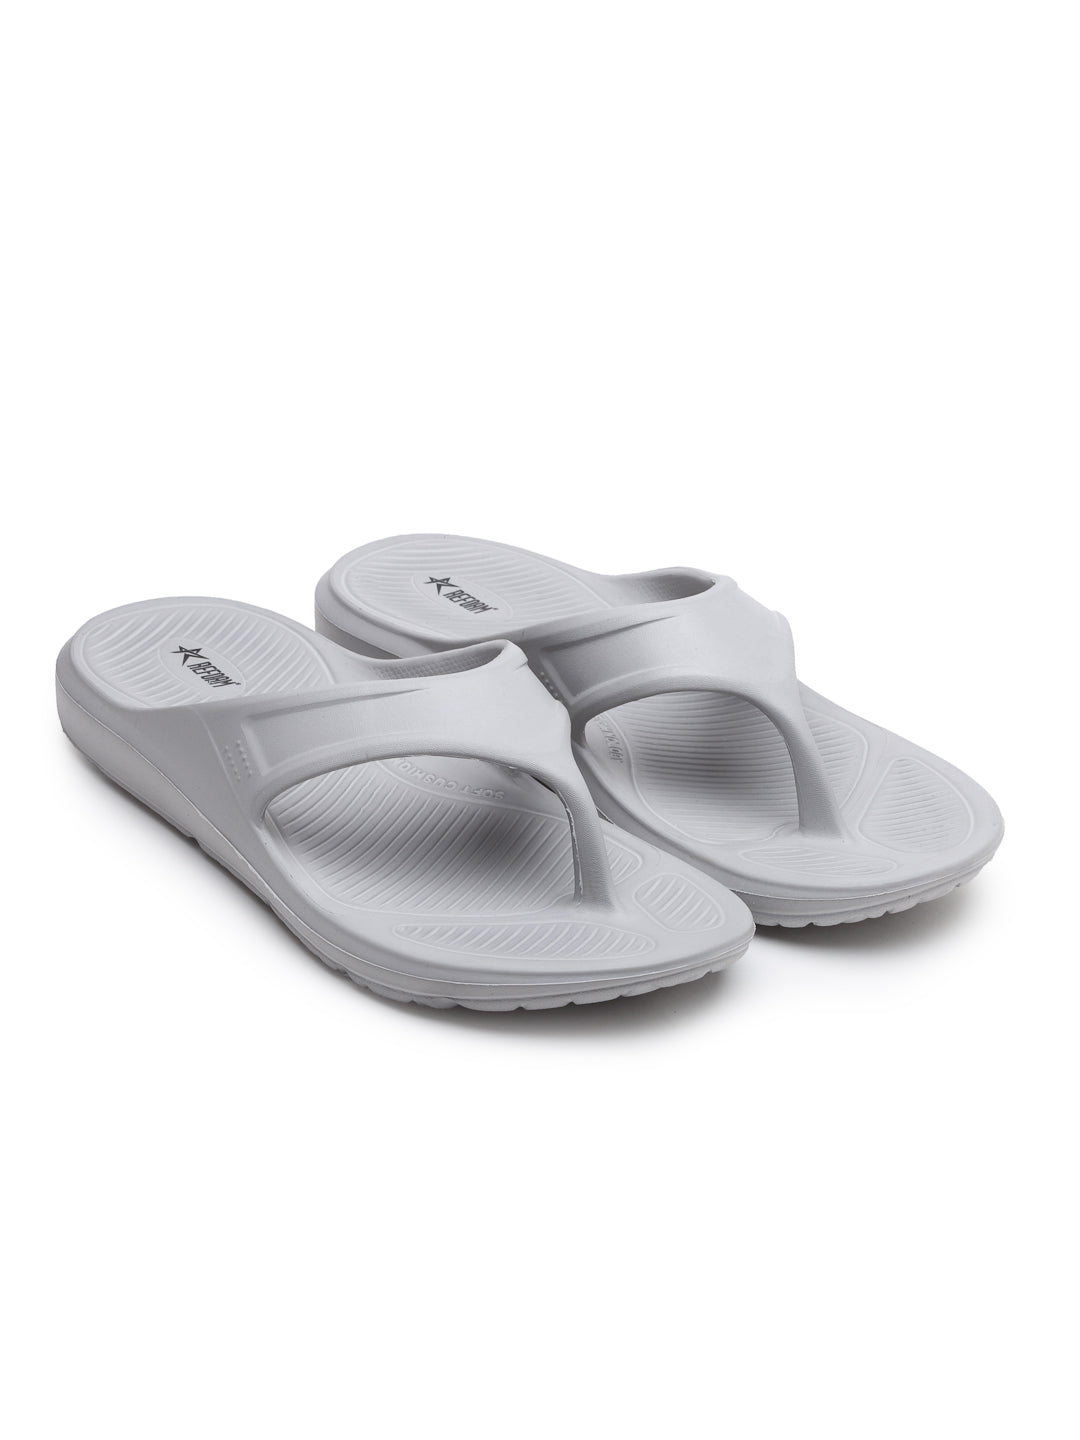 Light Grey Solid EVA Rubber Slip On Casual Slippers For Men